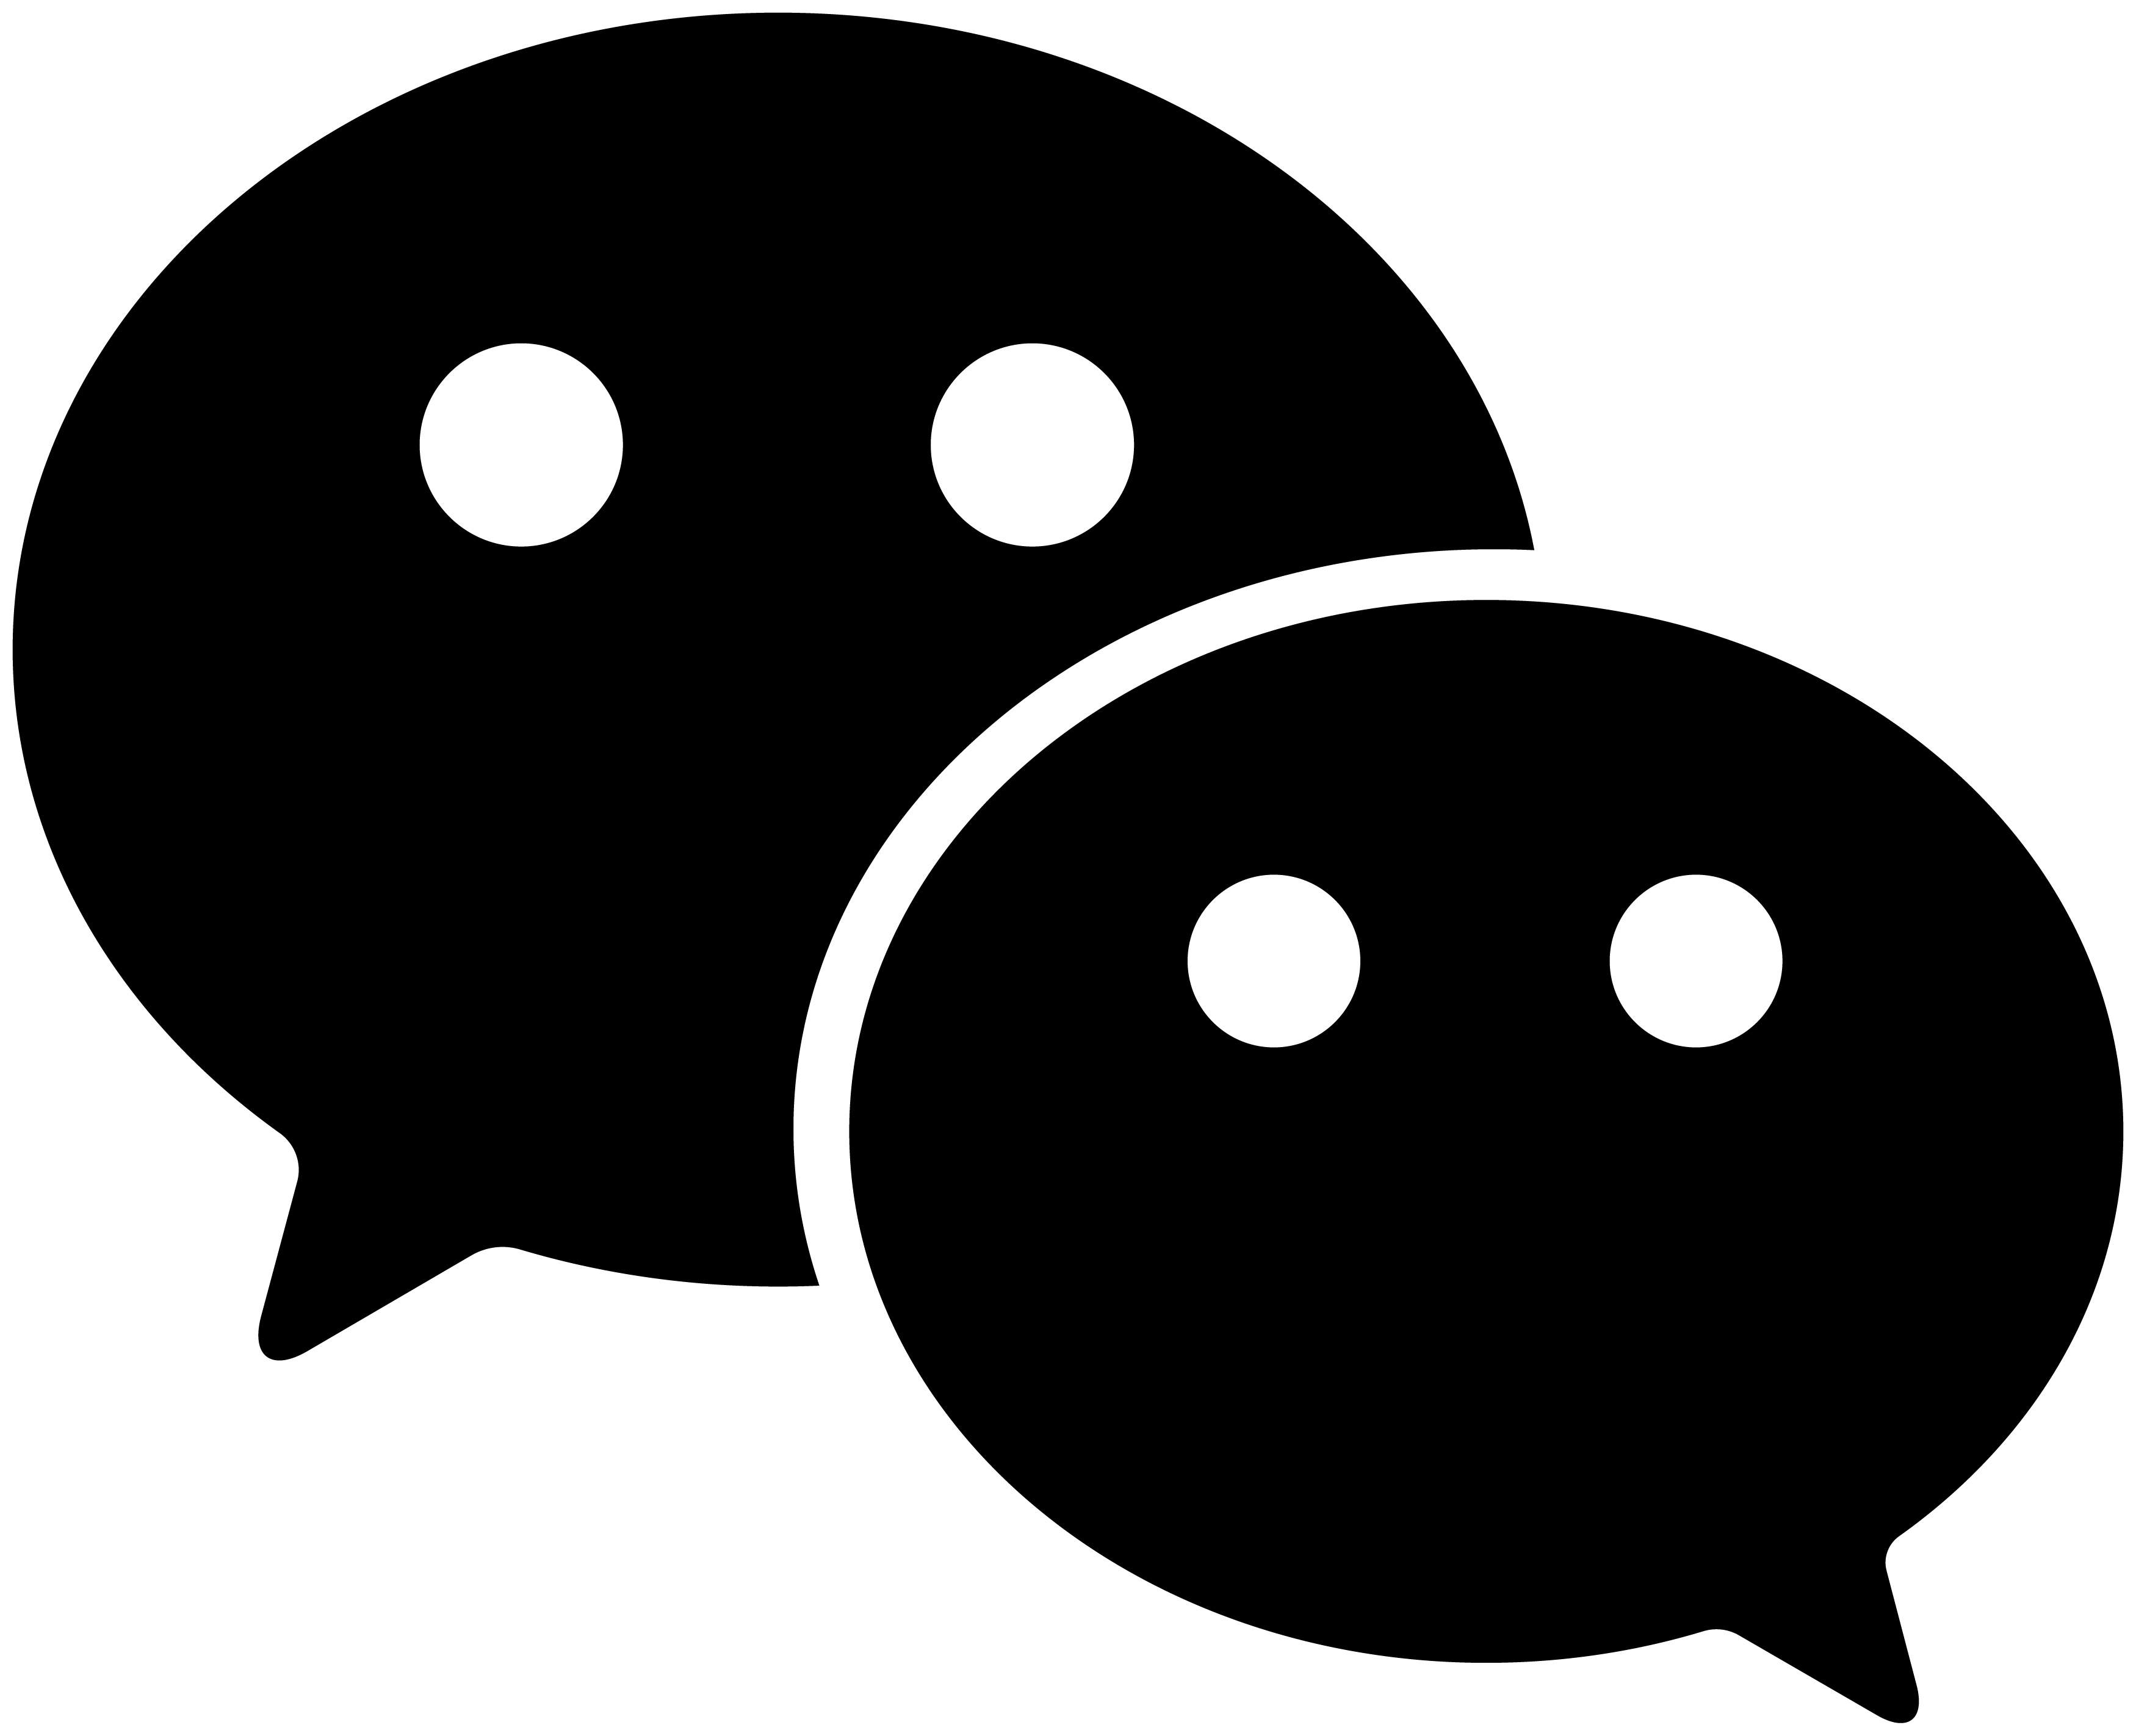 Wechat Logo Wechat_Logo - Wechat, Transparent background PNG HD thumbnail